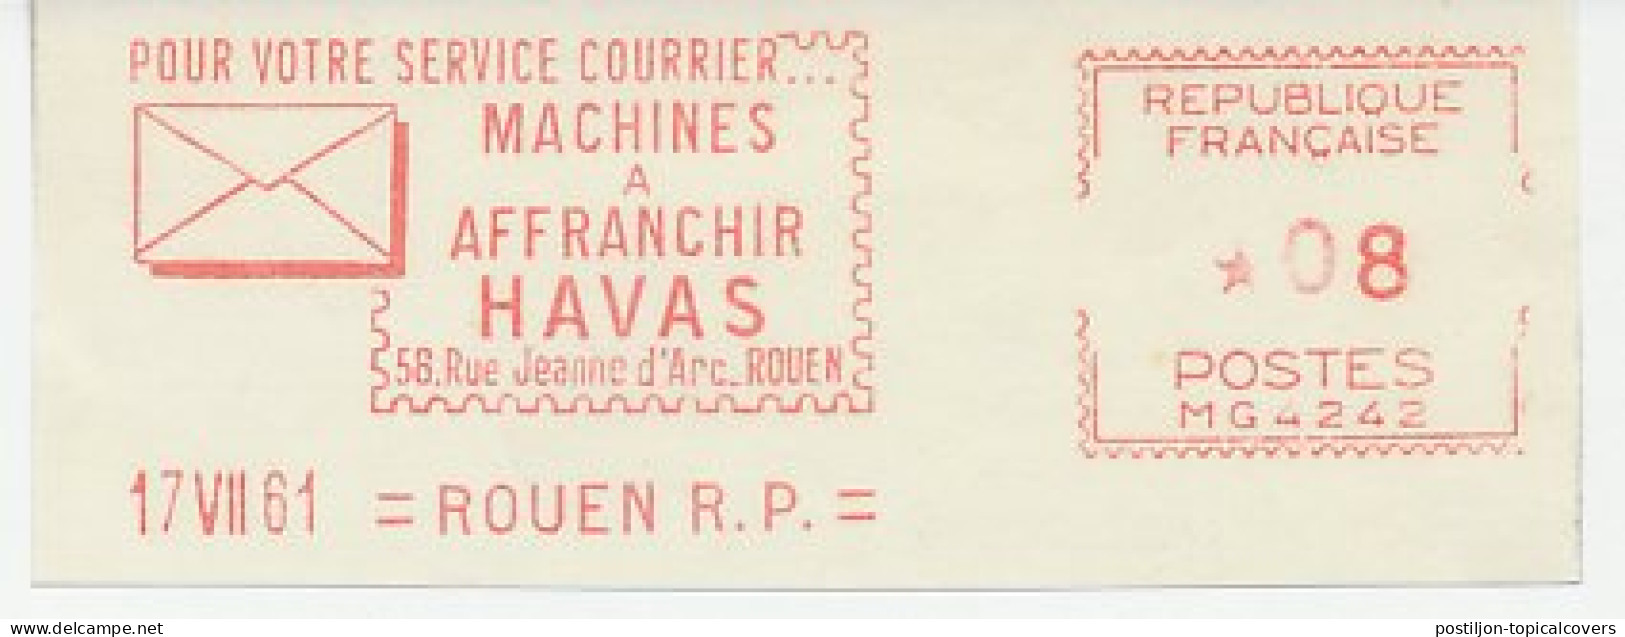 Meter Cut France 1961 Havas - Timbres De Distributeurs [ATM]